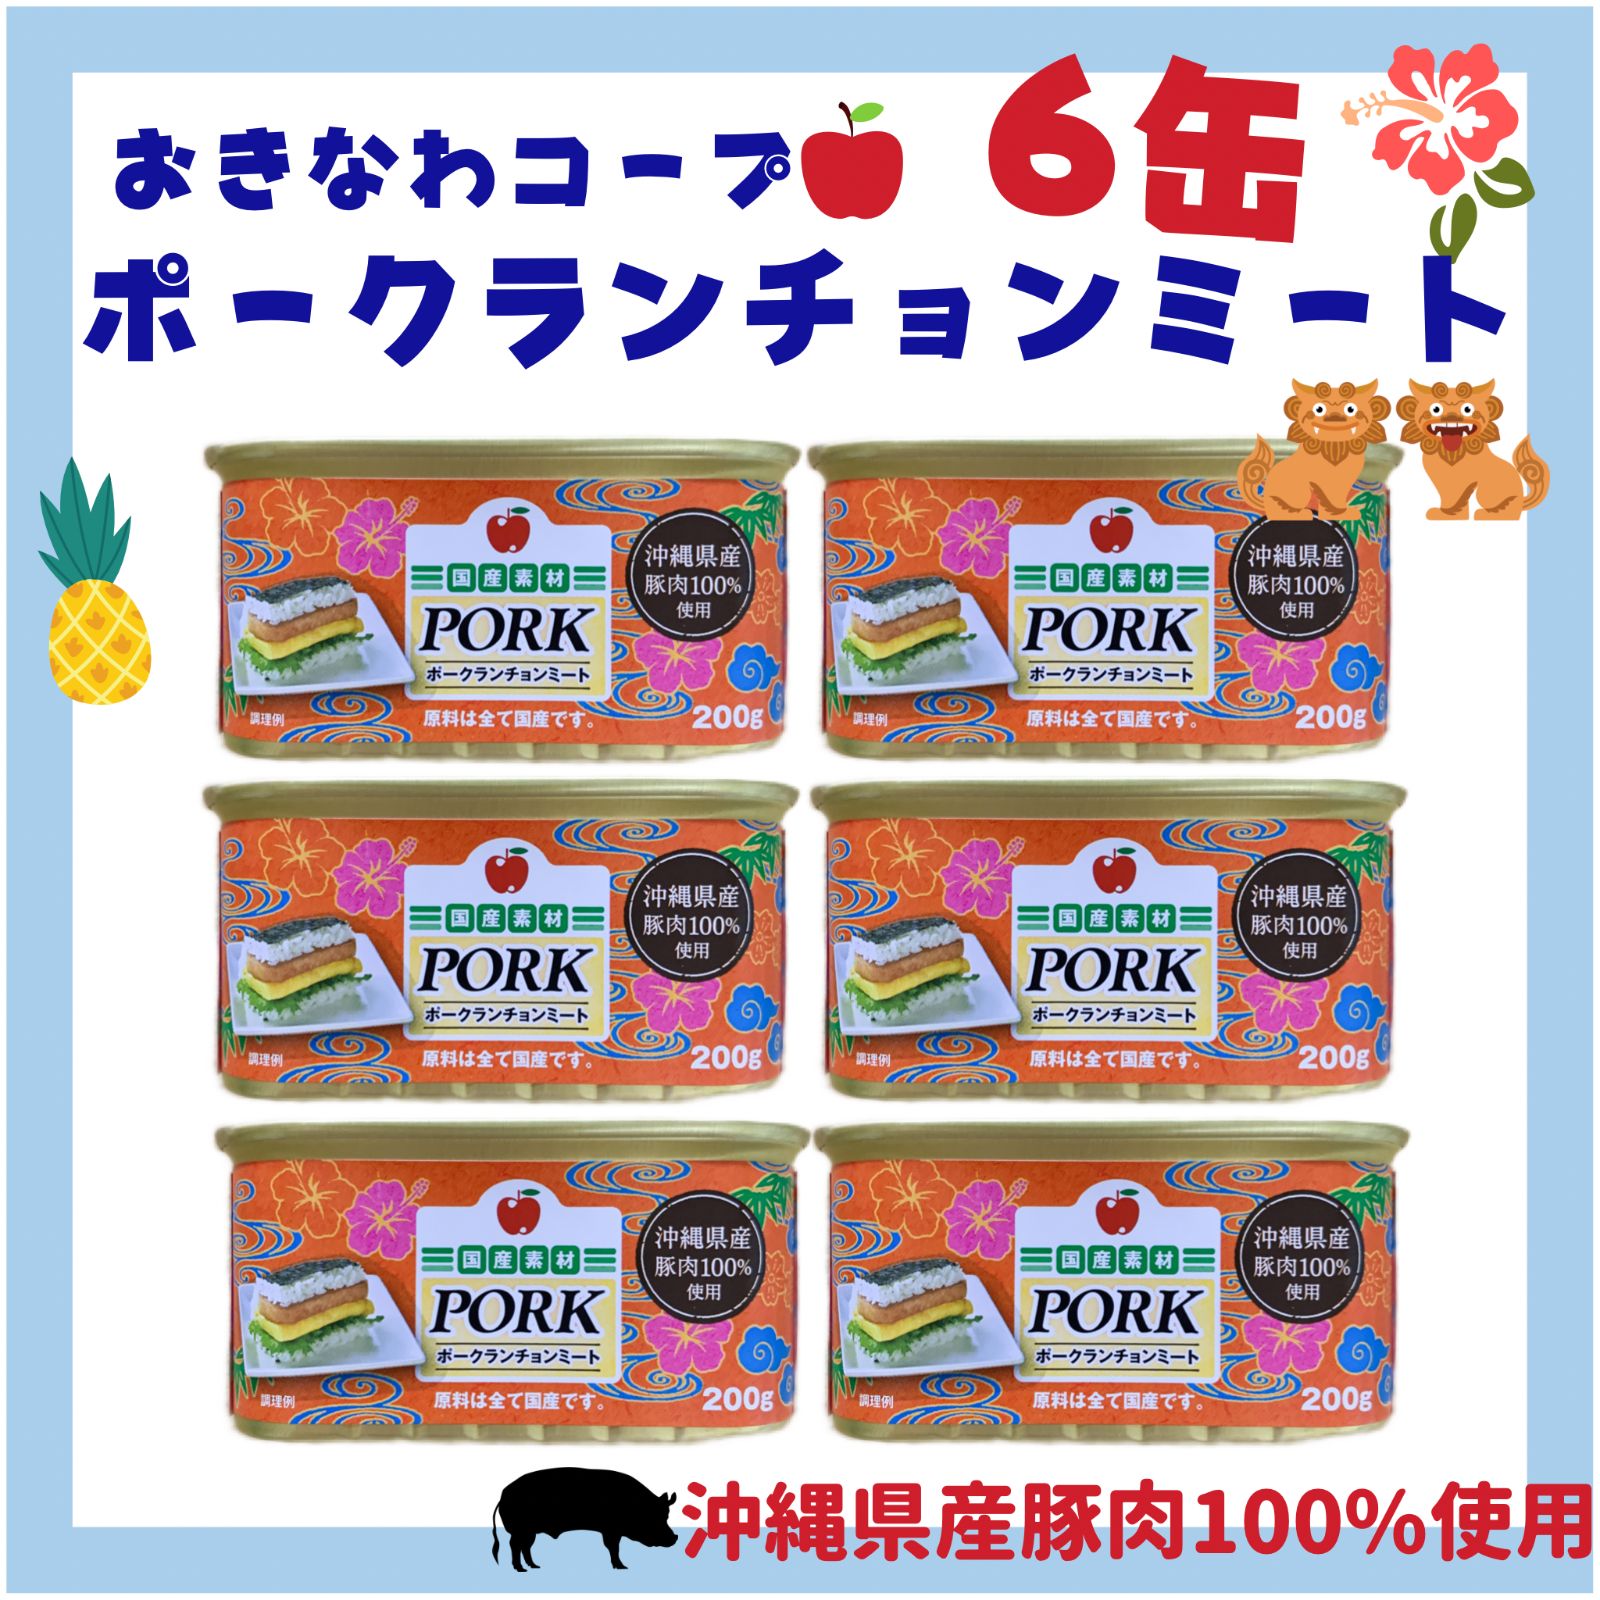 ポークランチョンミート6缶 沖縄ポーク缶 - 1